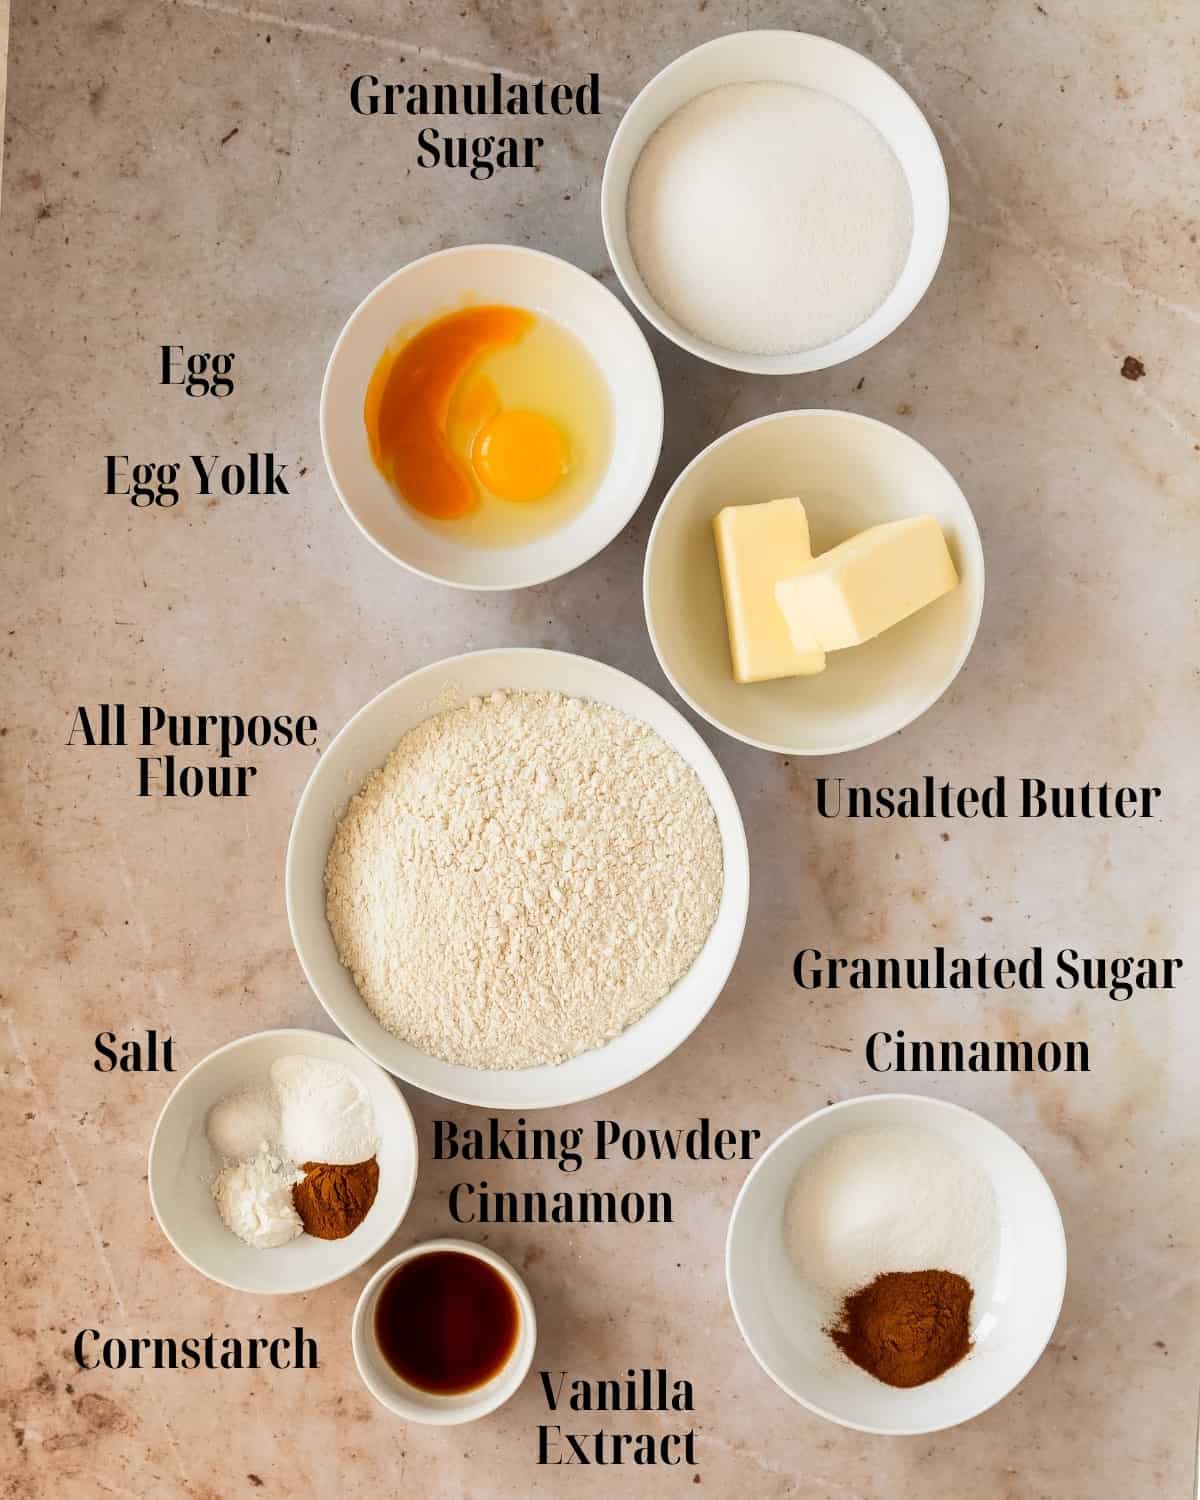 Sinckerdoodlewith no cream of tartar  ingredients: flour, baking powder, salt, cornstarch, ground cinnamon, butter, sugar, eggs and vanilla extract. 